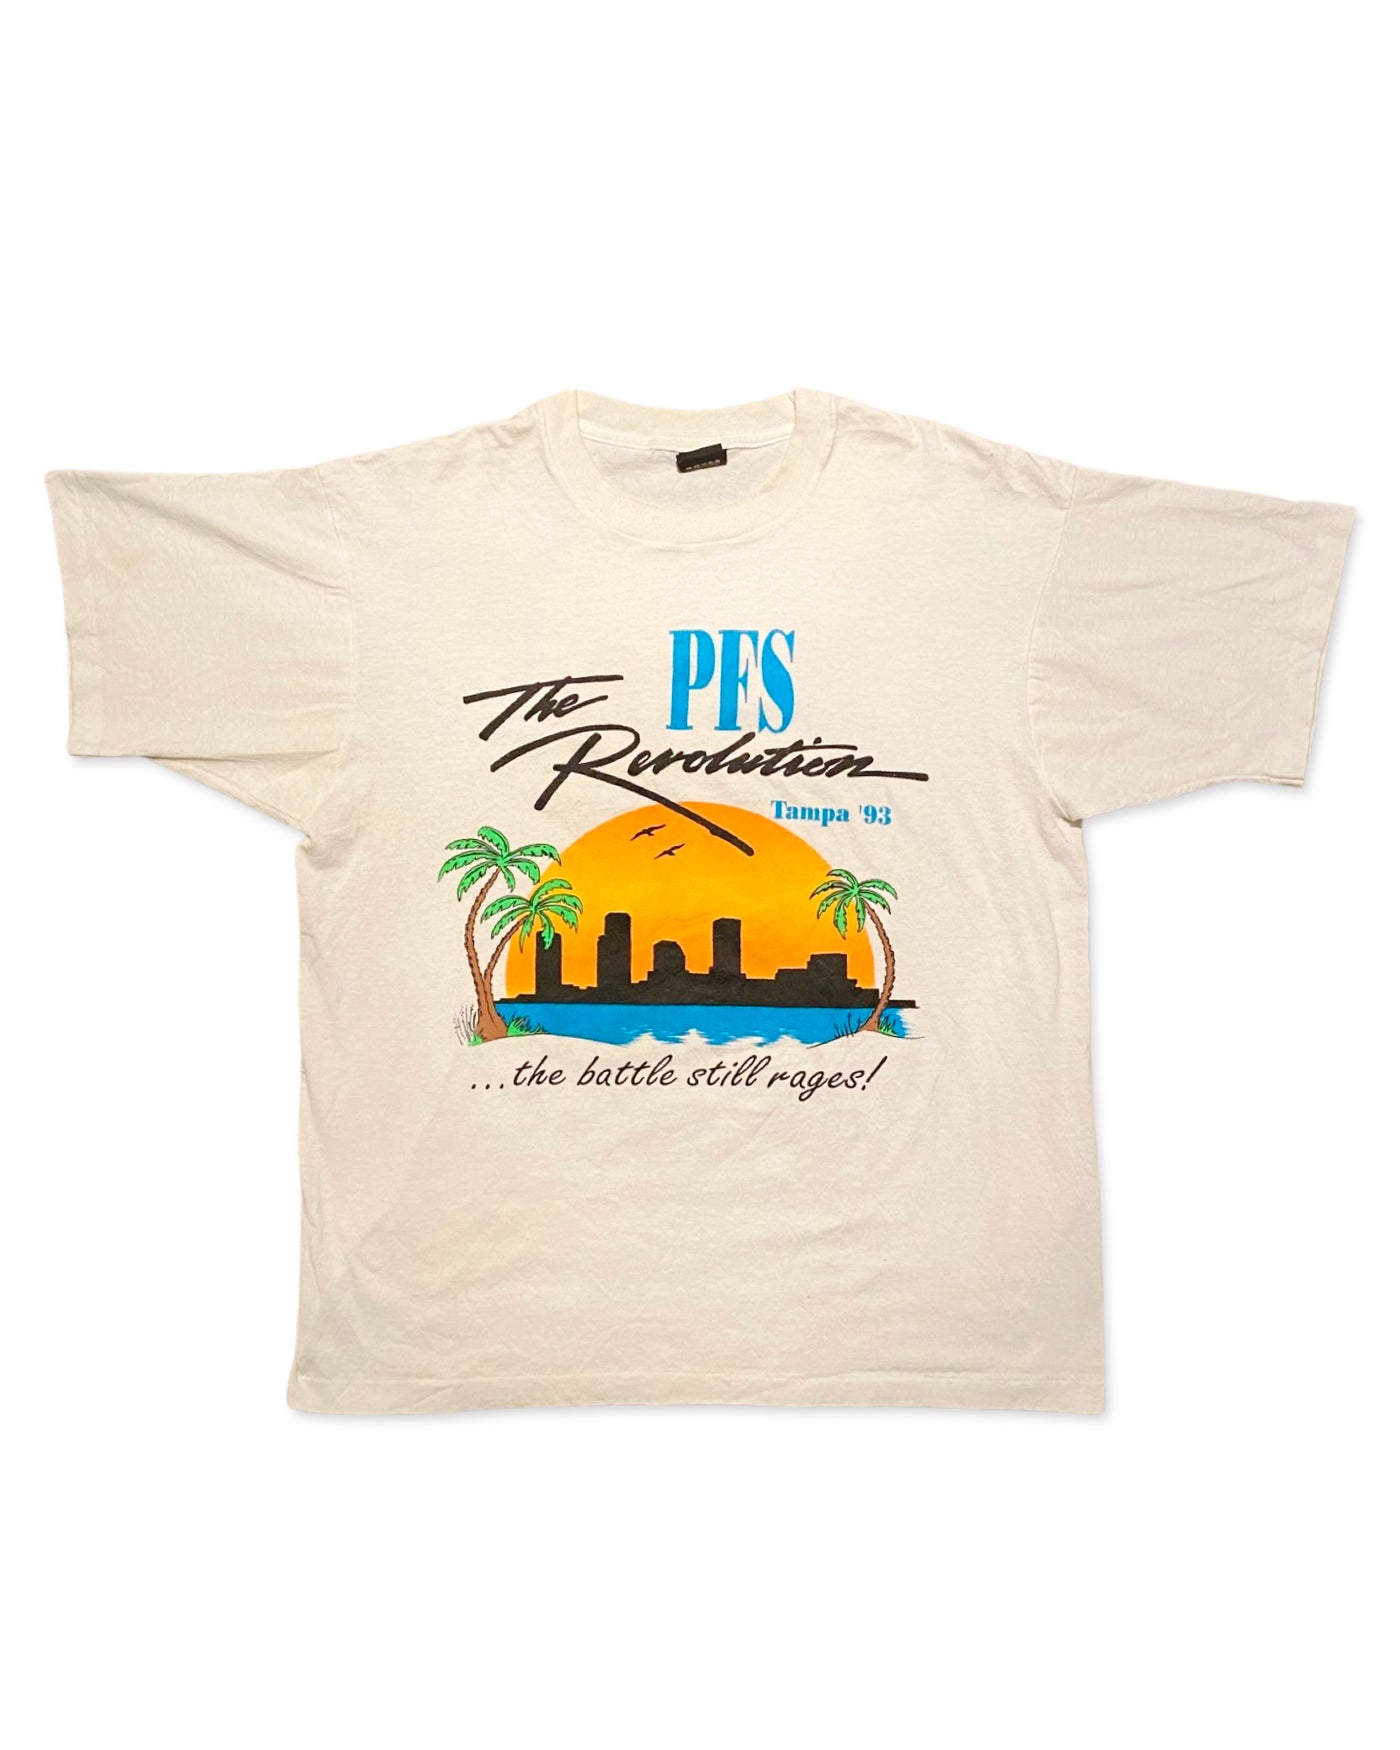 Vintage 1993 Tampa T-Shirt